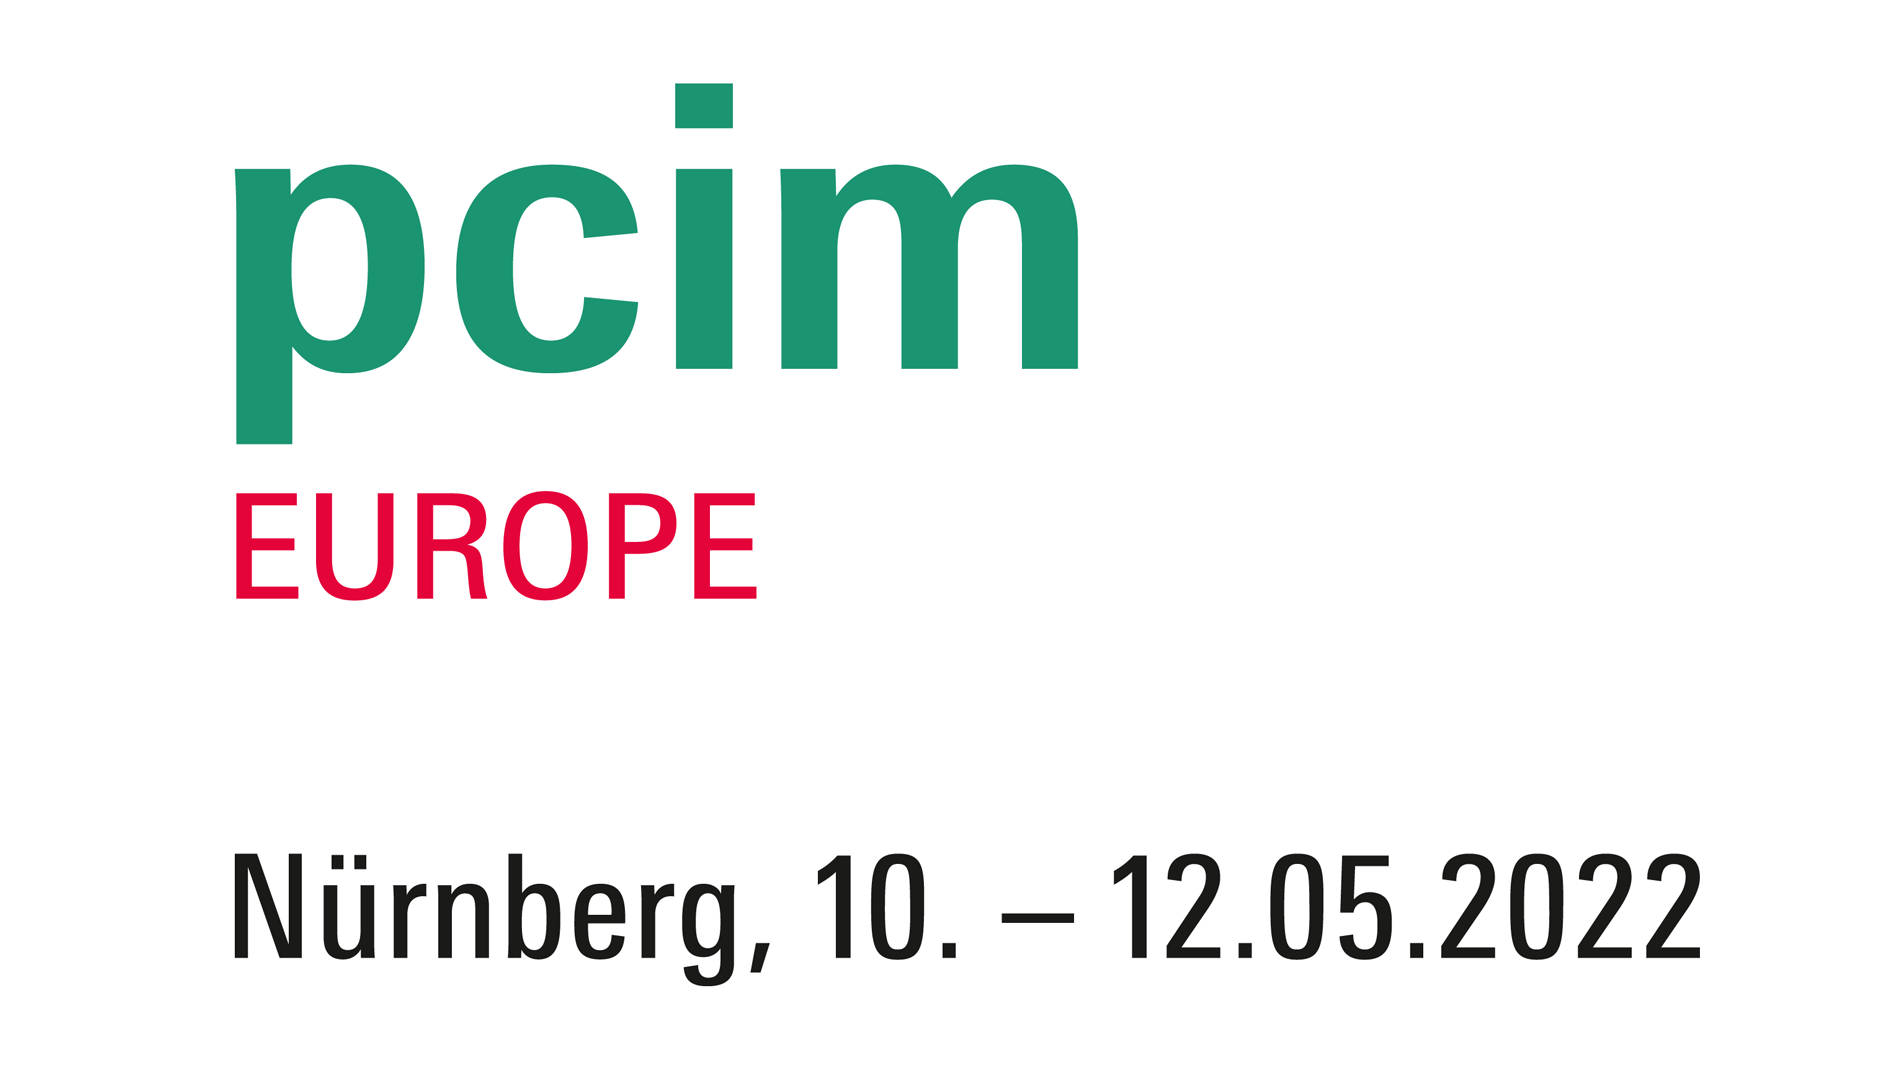 Logo der PCIM Europe